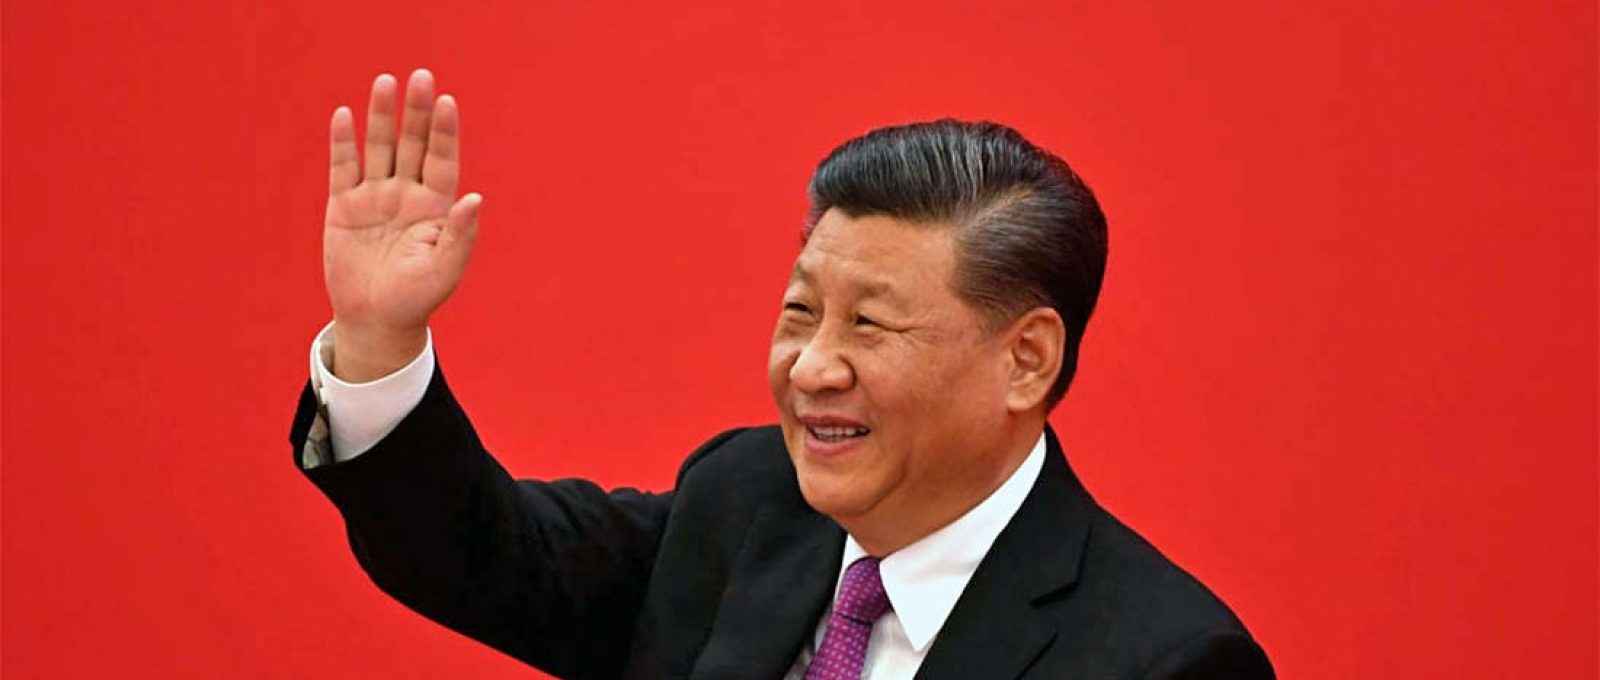 O presidente chinês Xi Jinping (Noel Celis/Getty Images).